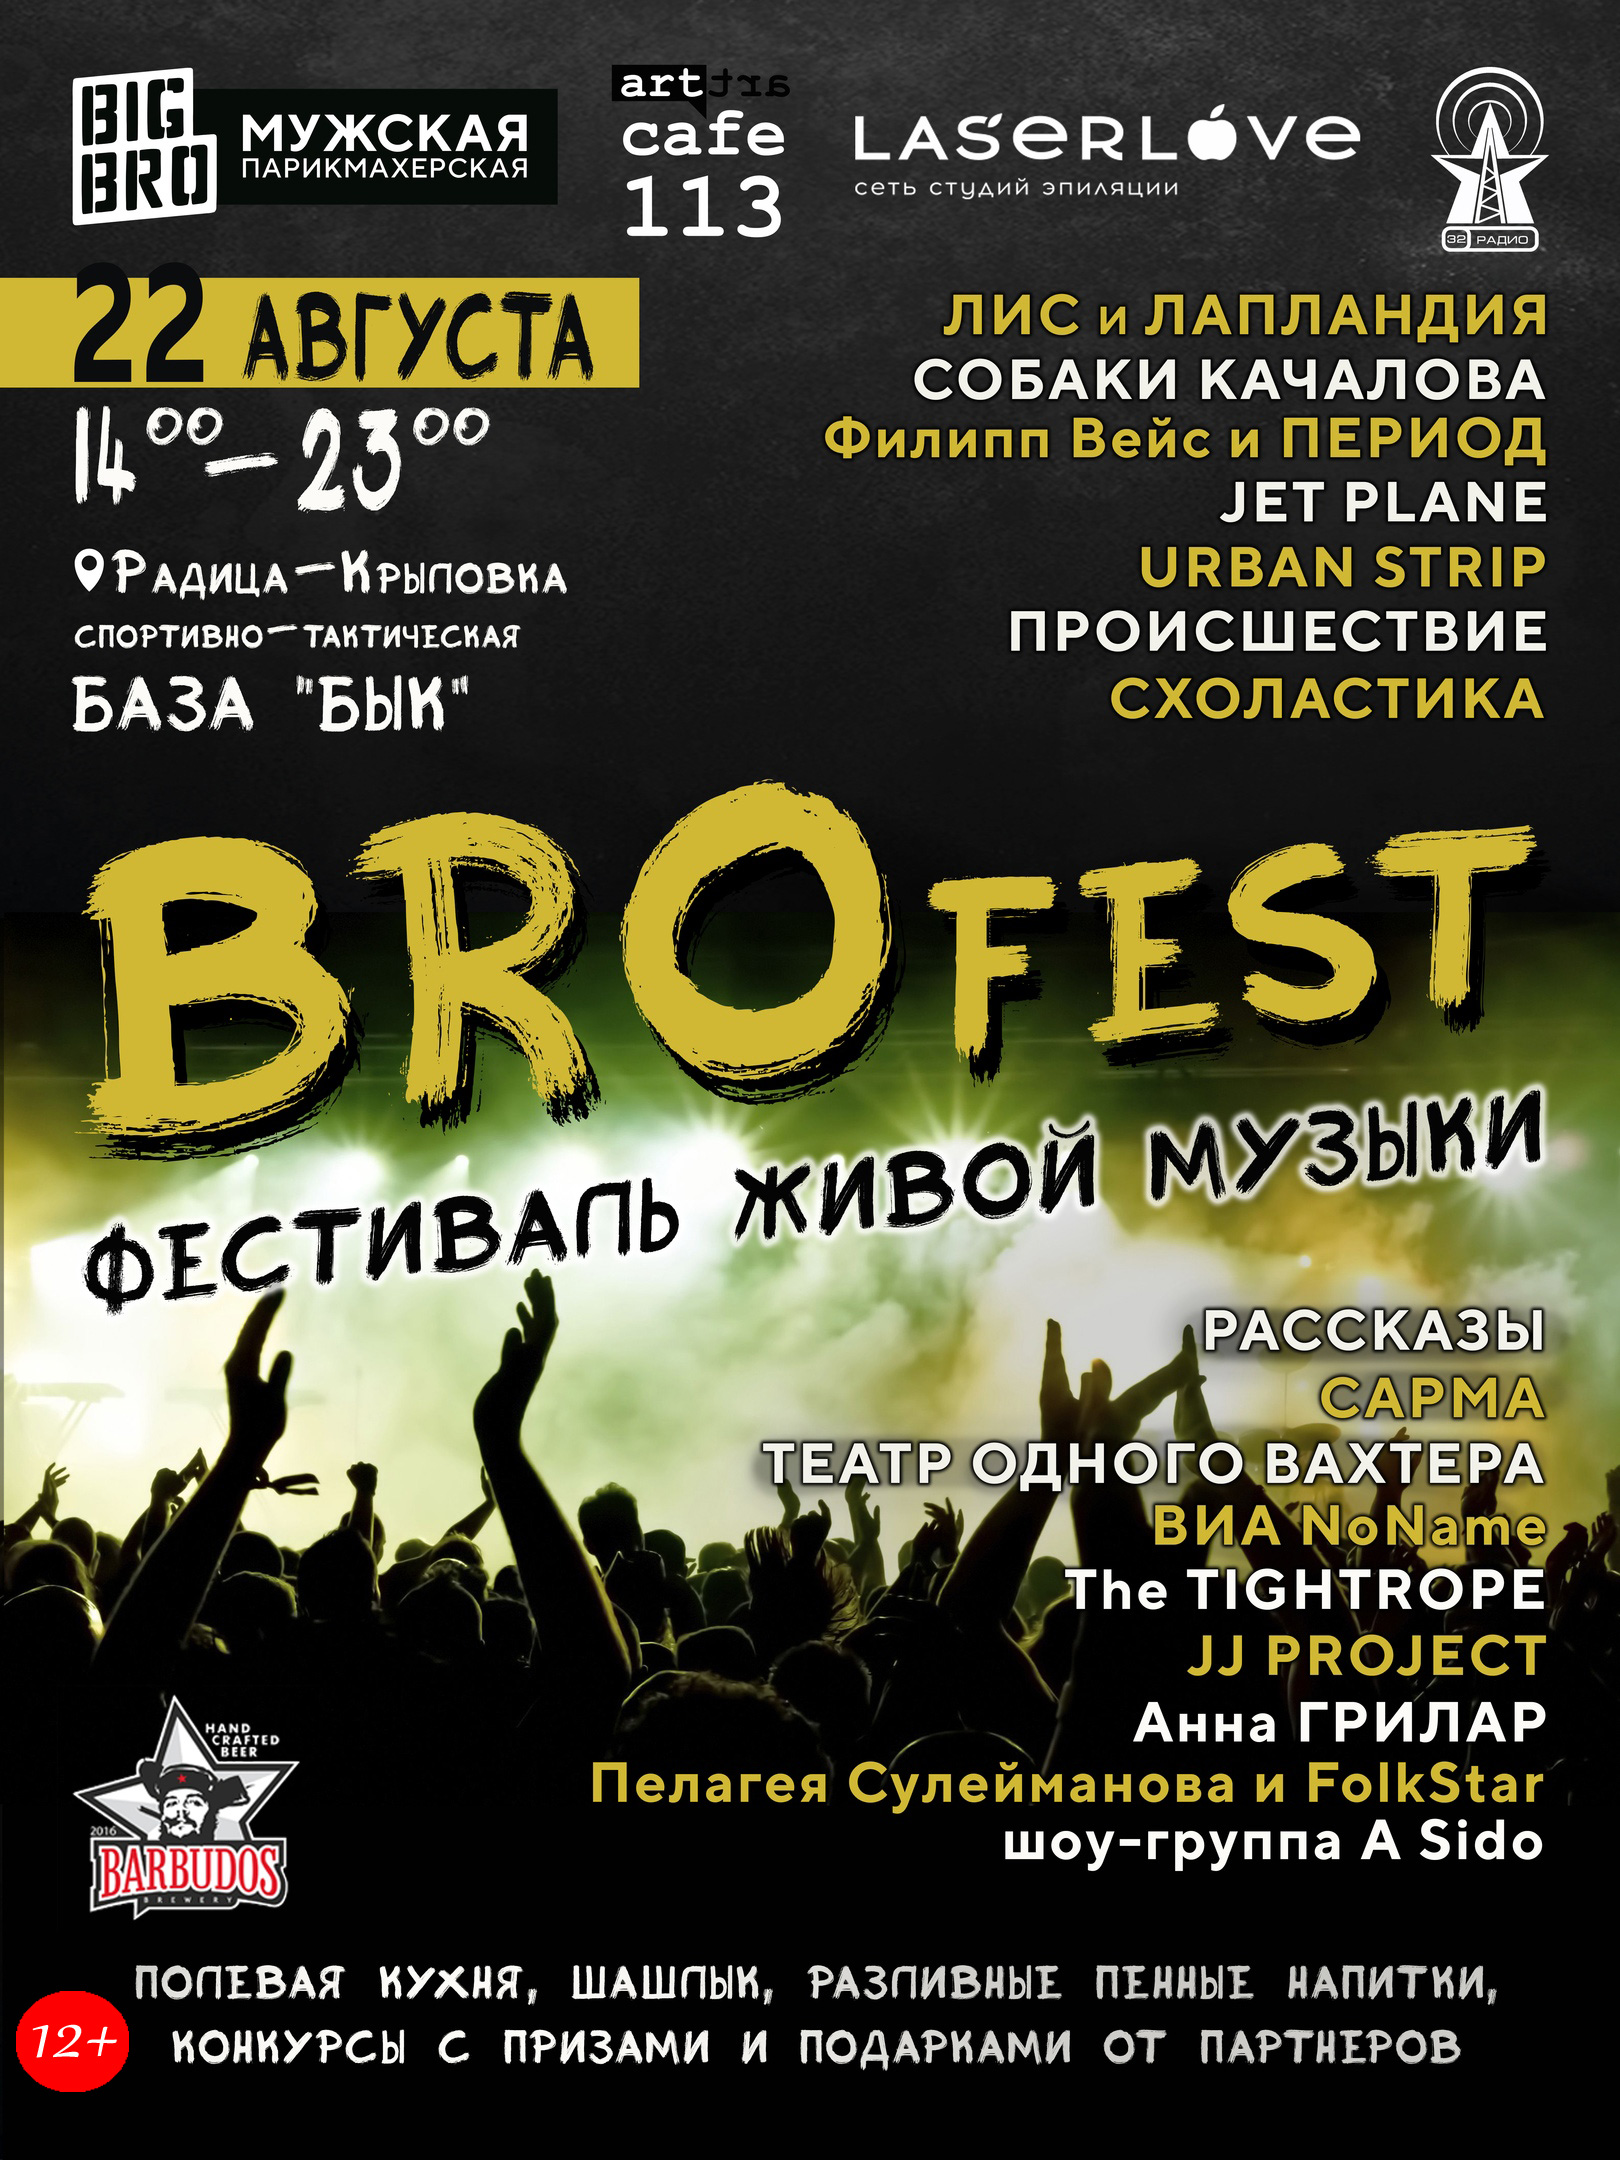 Фестиваля живой музыки BROfest 22 августа не будет